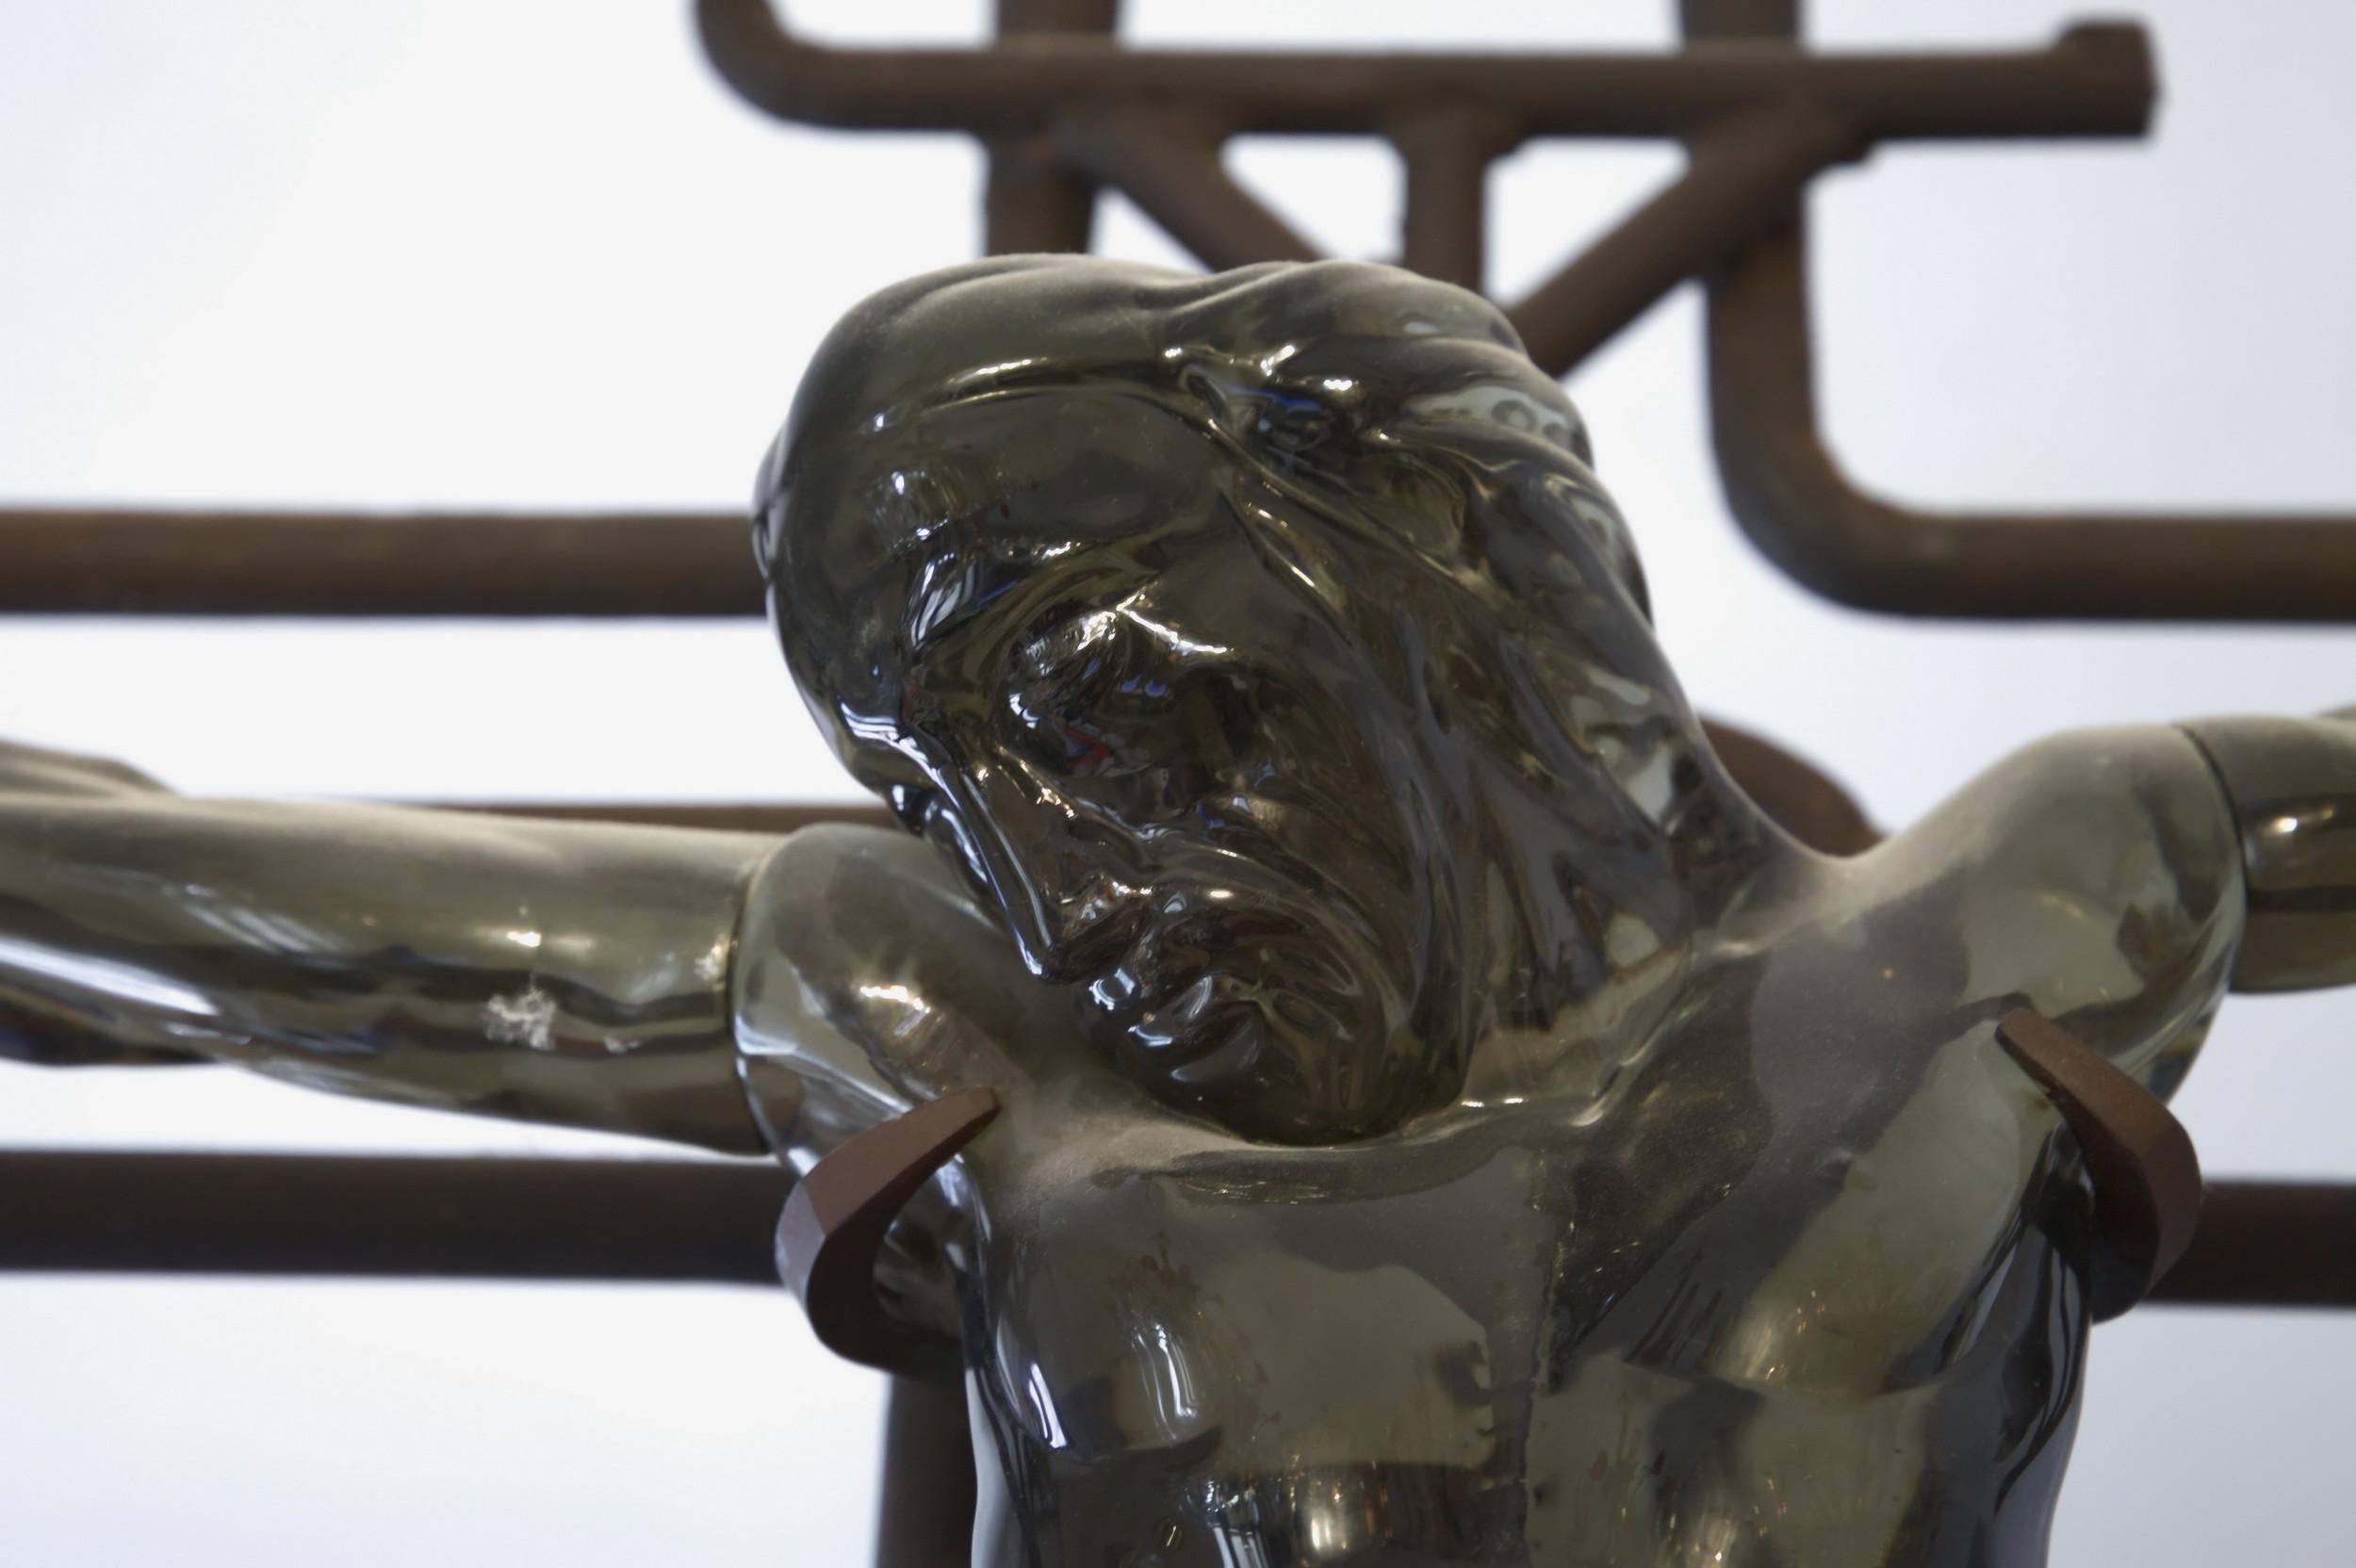 Intensive und leidenschaftliche Glasskulptur von Ermanno Nason, der sein Lieblingsglas, das acciaio grau, verwendet.
Diese warme, transparente graue Farbe wird oft von Glasmassiccio Bildhauern verwendet, mit großartigen Ergebnissen bei Figuren. Es